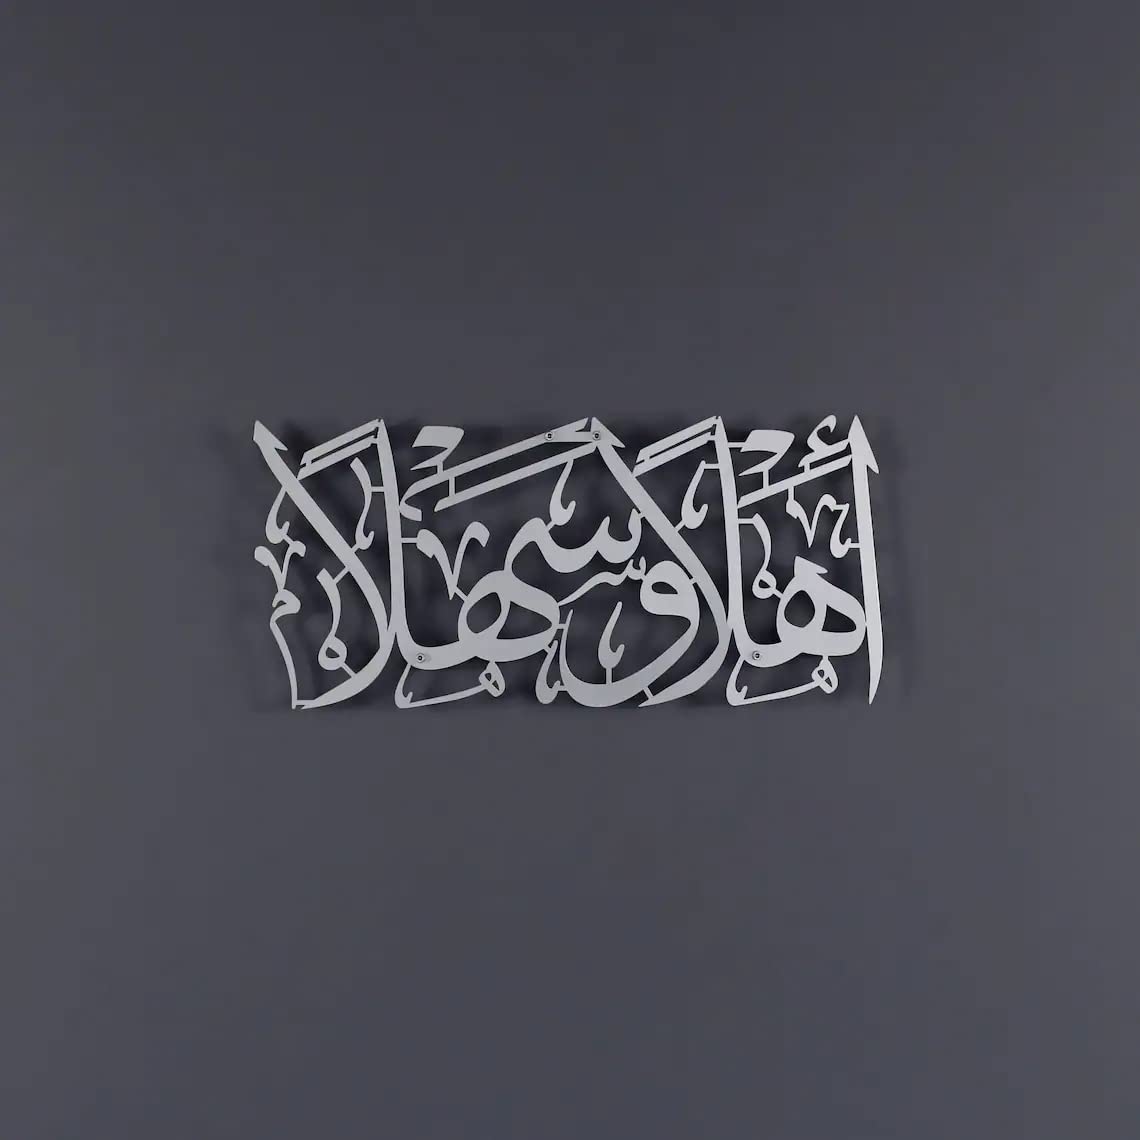 Ahlan wa sahlan Metal islamic Wall Art | Ahlan wasahlan Wall Hanging